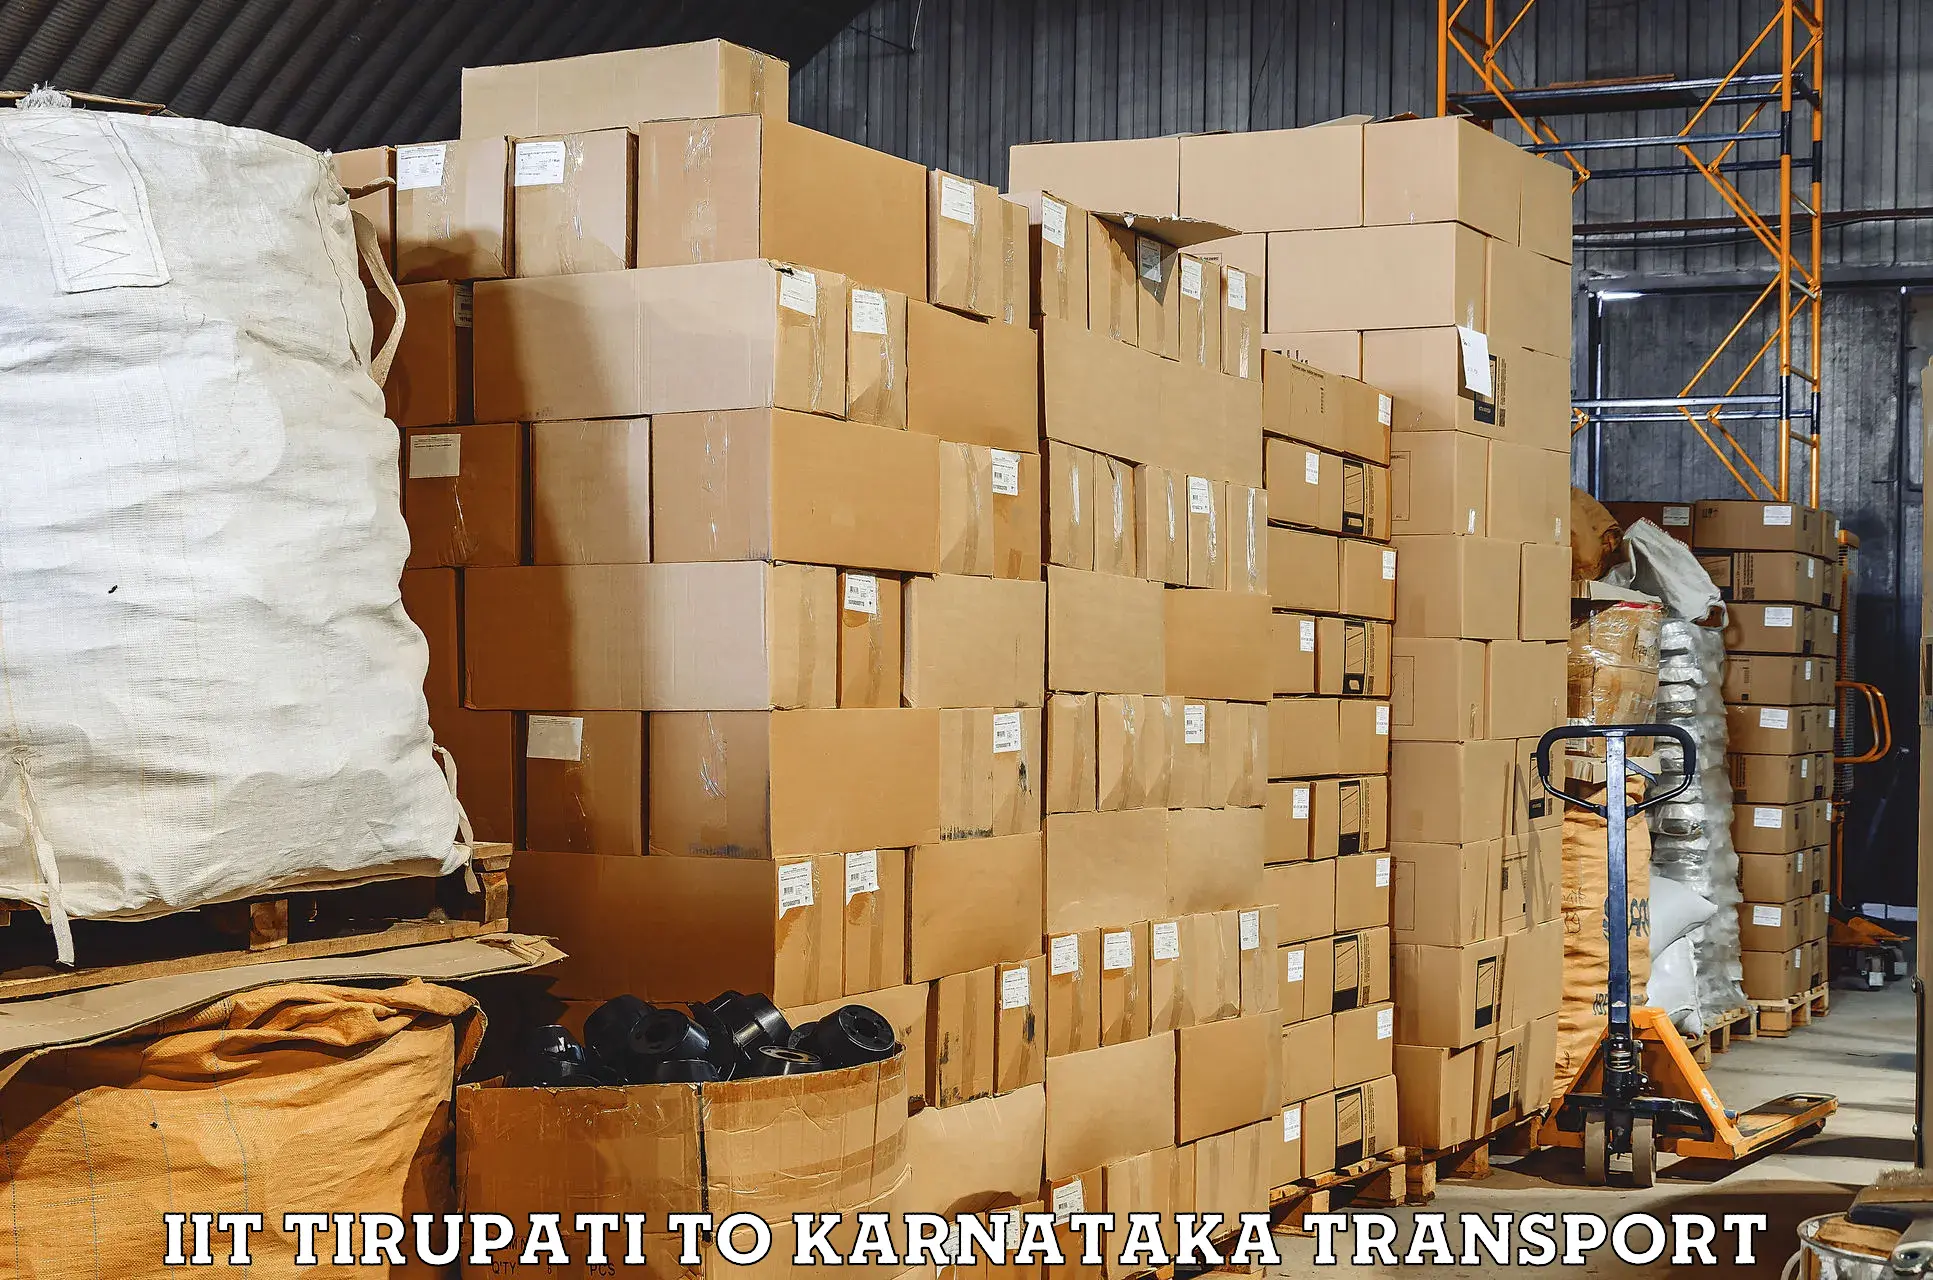 Transport in sharing IIT Tirupati to Saraswathipuram